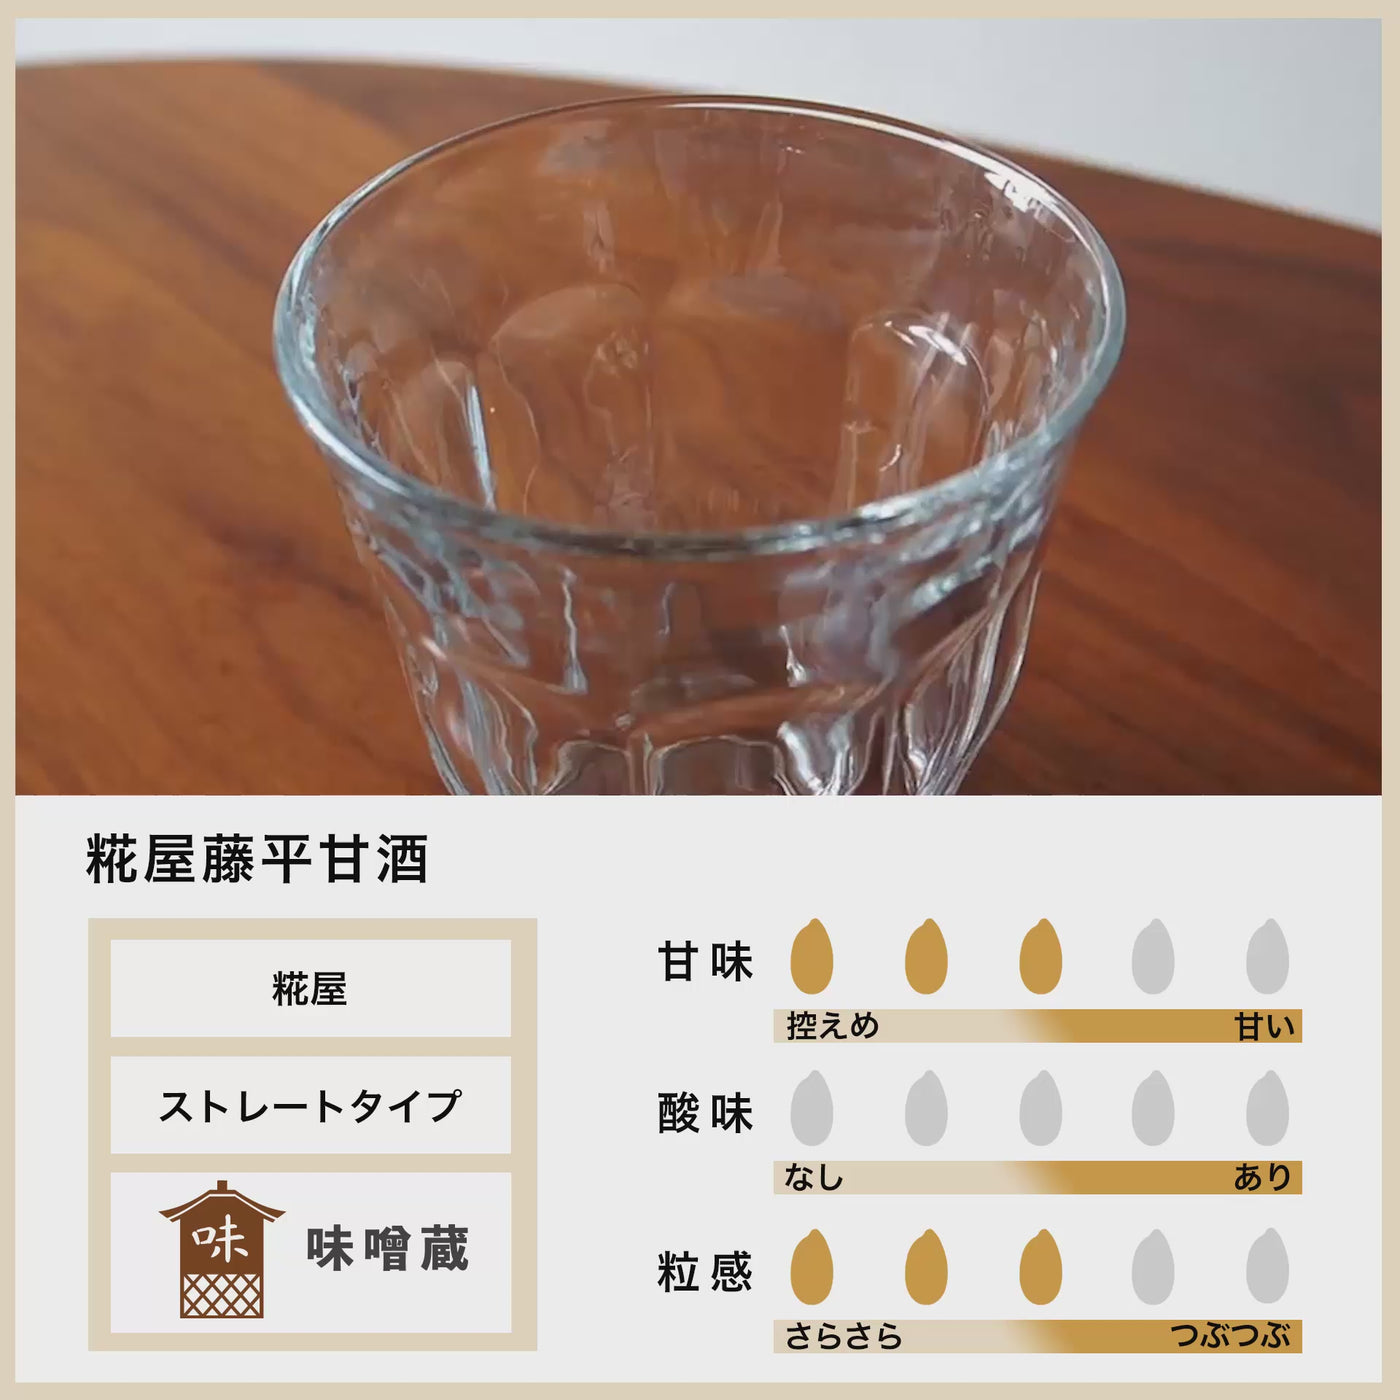 【まとめ買い】糀屋藤平 甘酒 720ml 6本セット